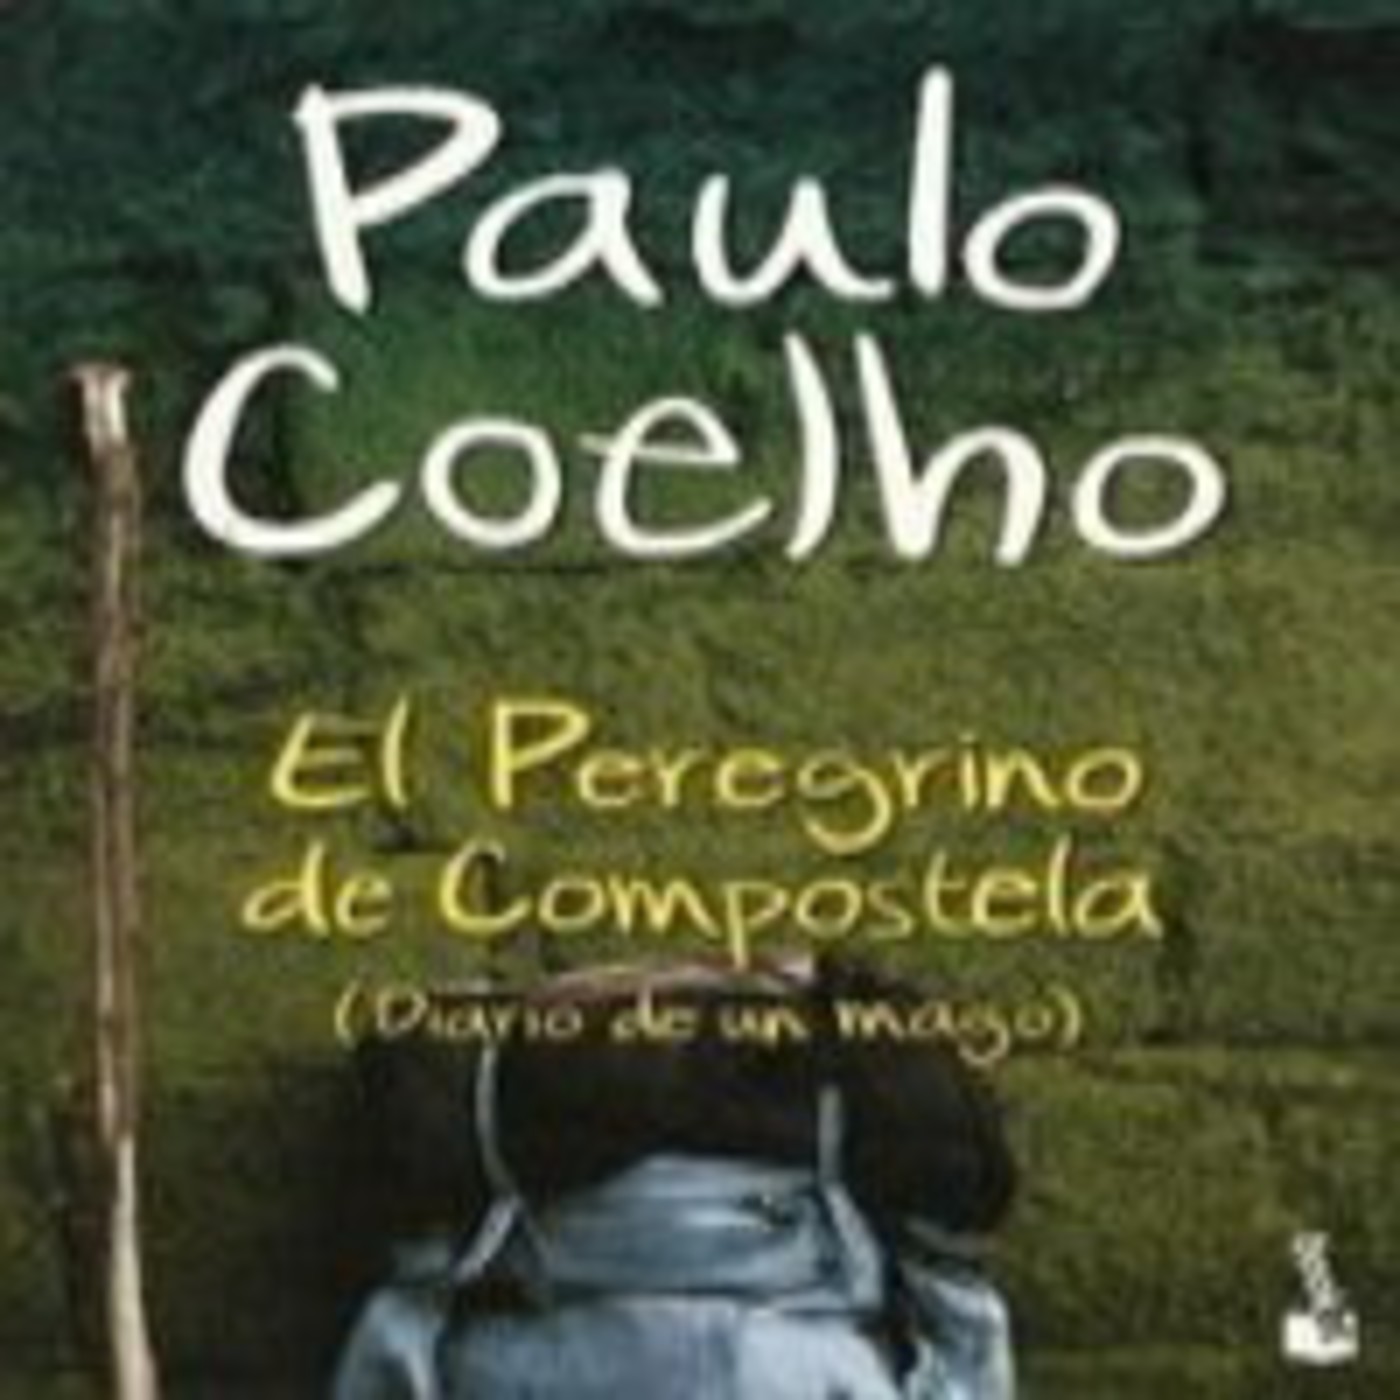 El Peregrino de Compostela (Diario de un mago) de Paulo Coelho